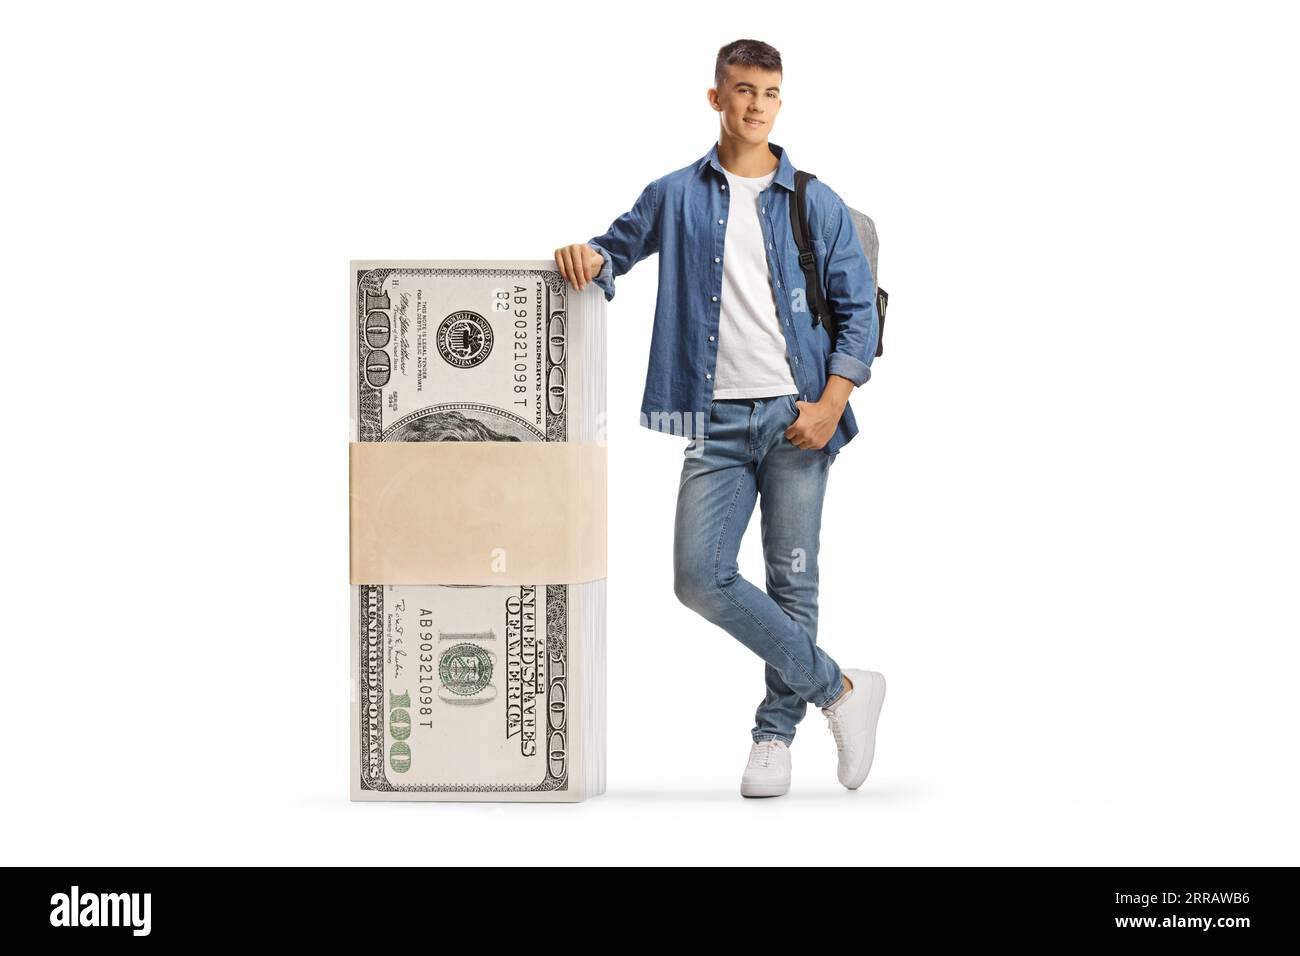 Männlicher Student, der sich auf einen Stapel US-Dollar-Banknoten stützt, isoliert auf weißem Hintergrund Stockfoto